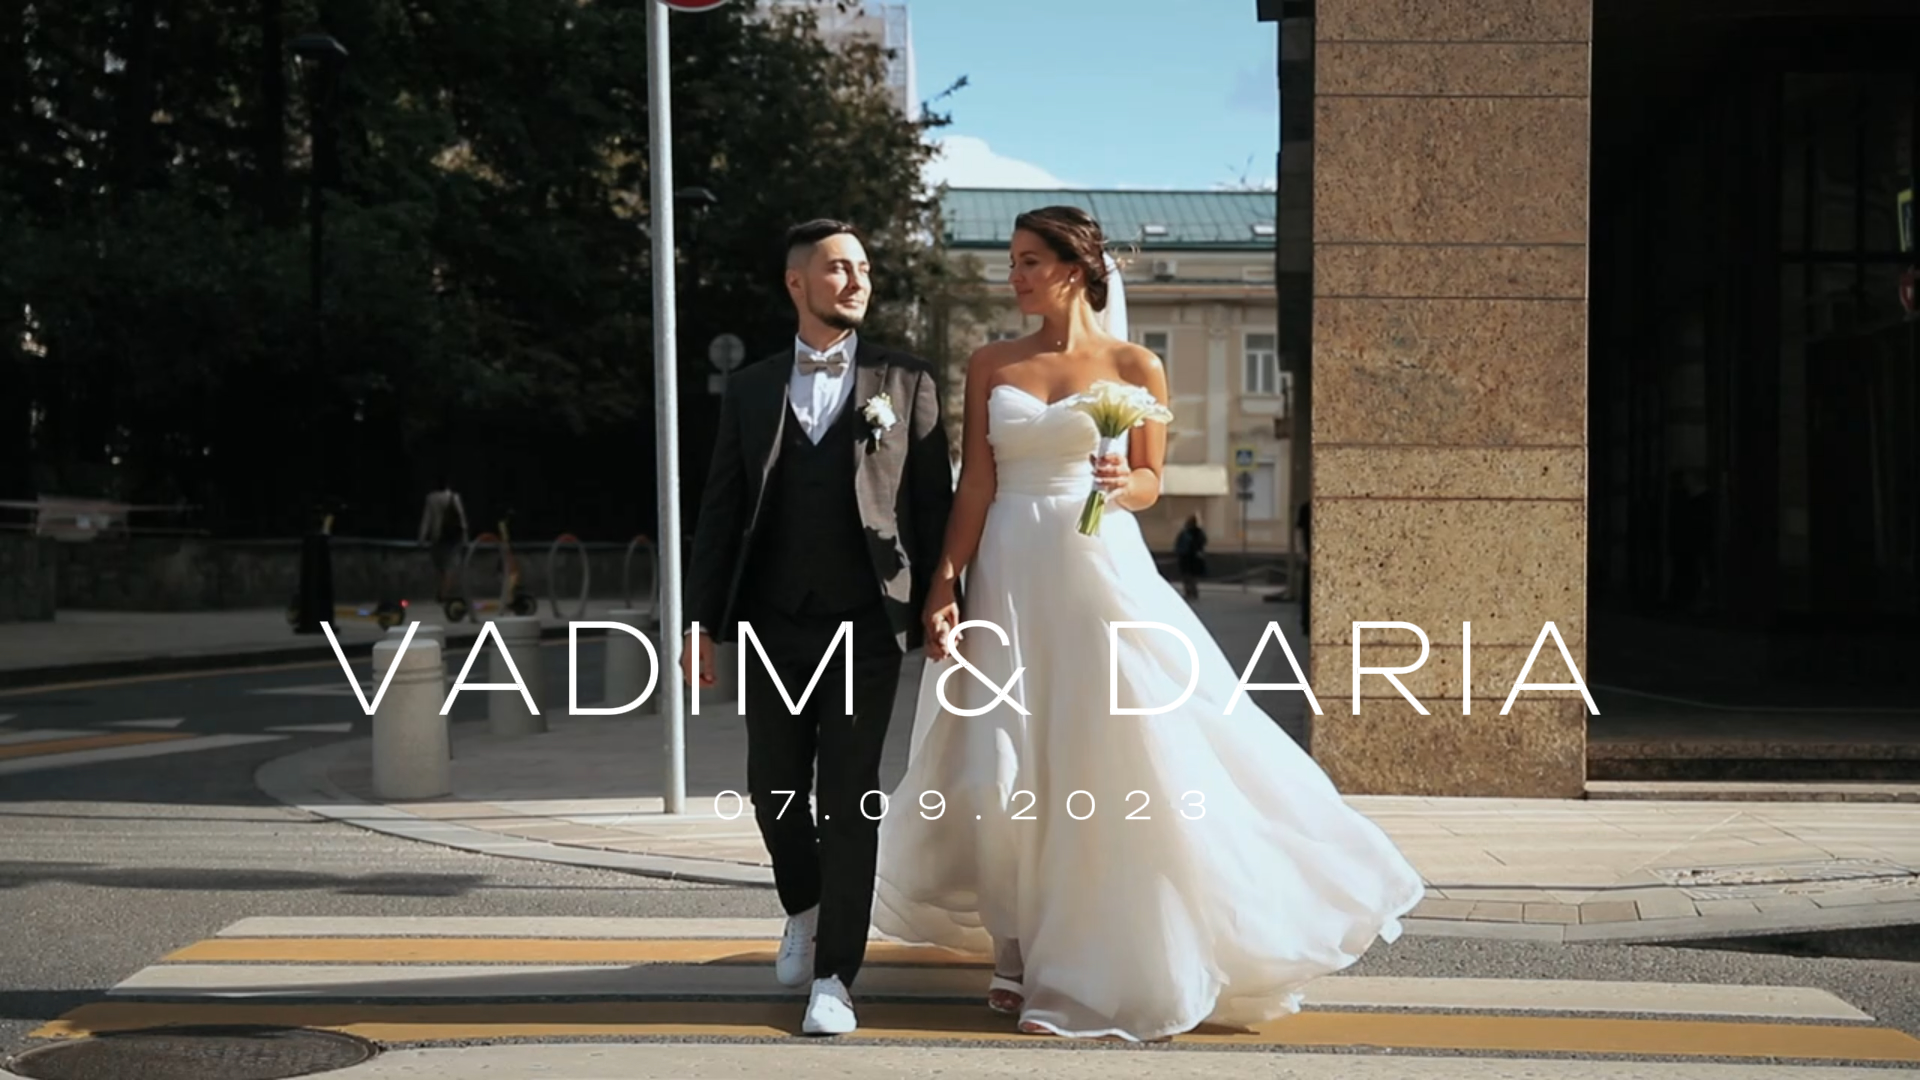 Vadim & Daria - Radisson Blu Olympiyskiy Hotel